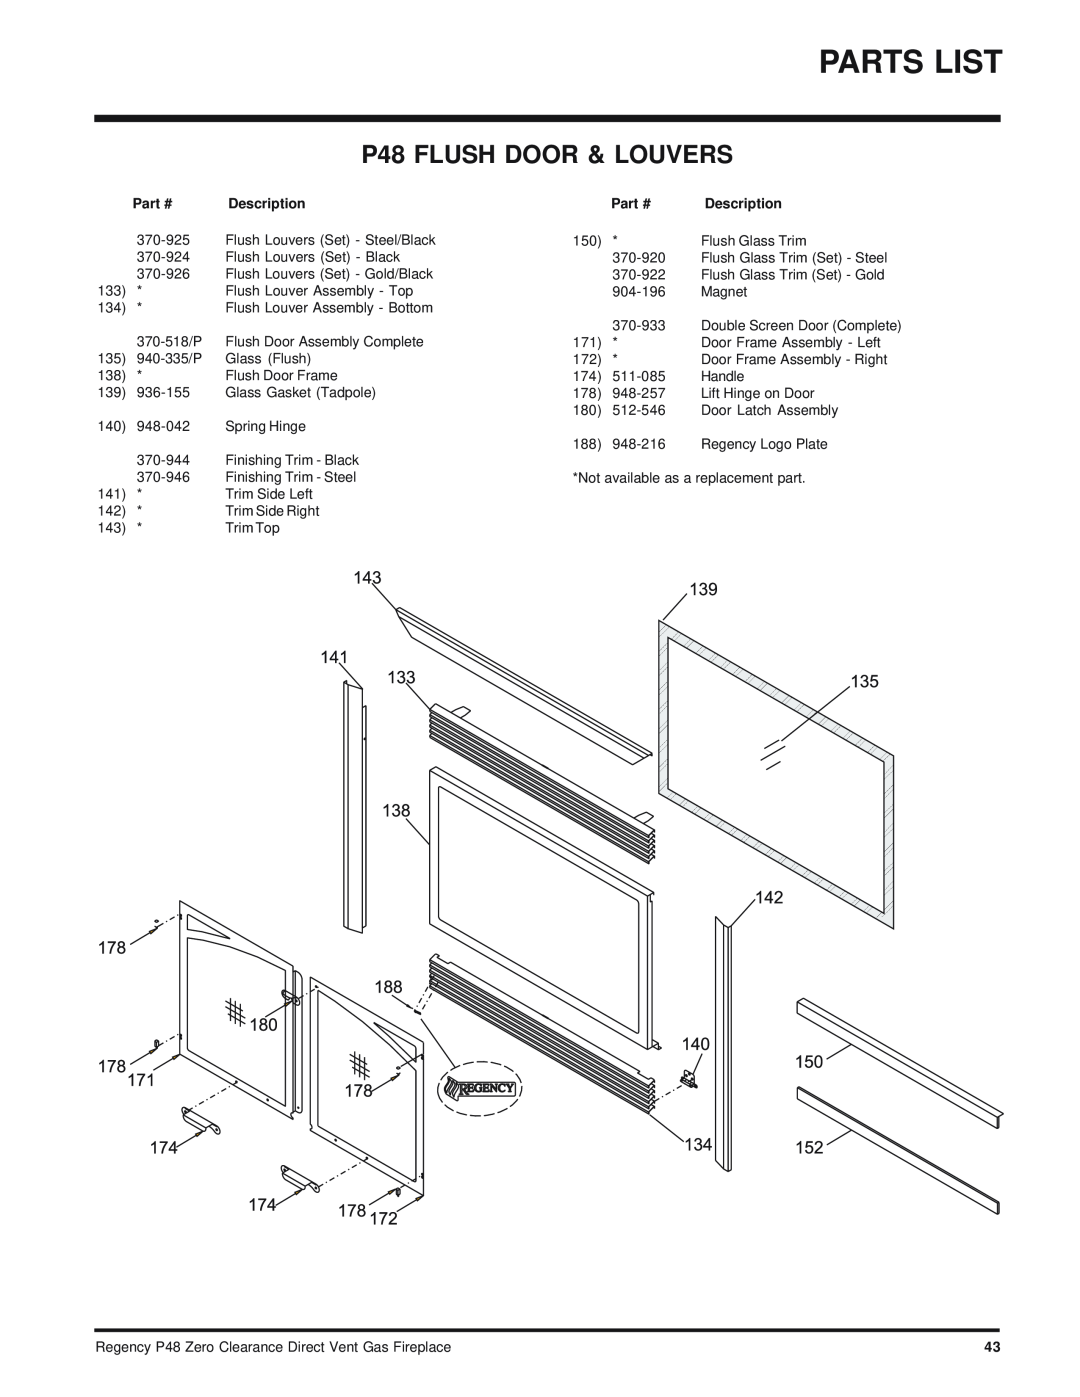 Regency P48-LP, P48-NG installation manual P48 FLUSH DOOR & LOUVERS, Part #, Description 